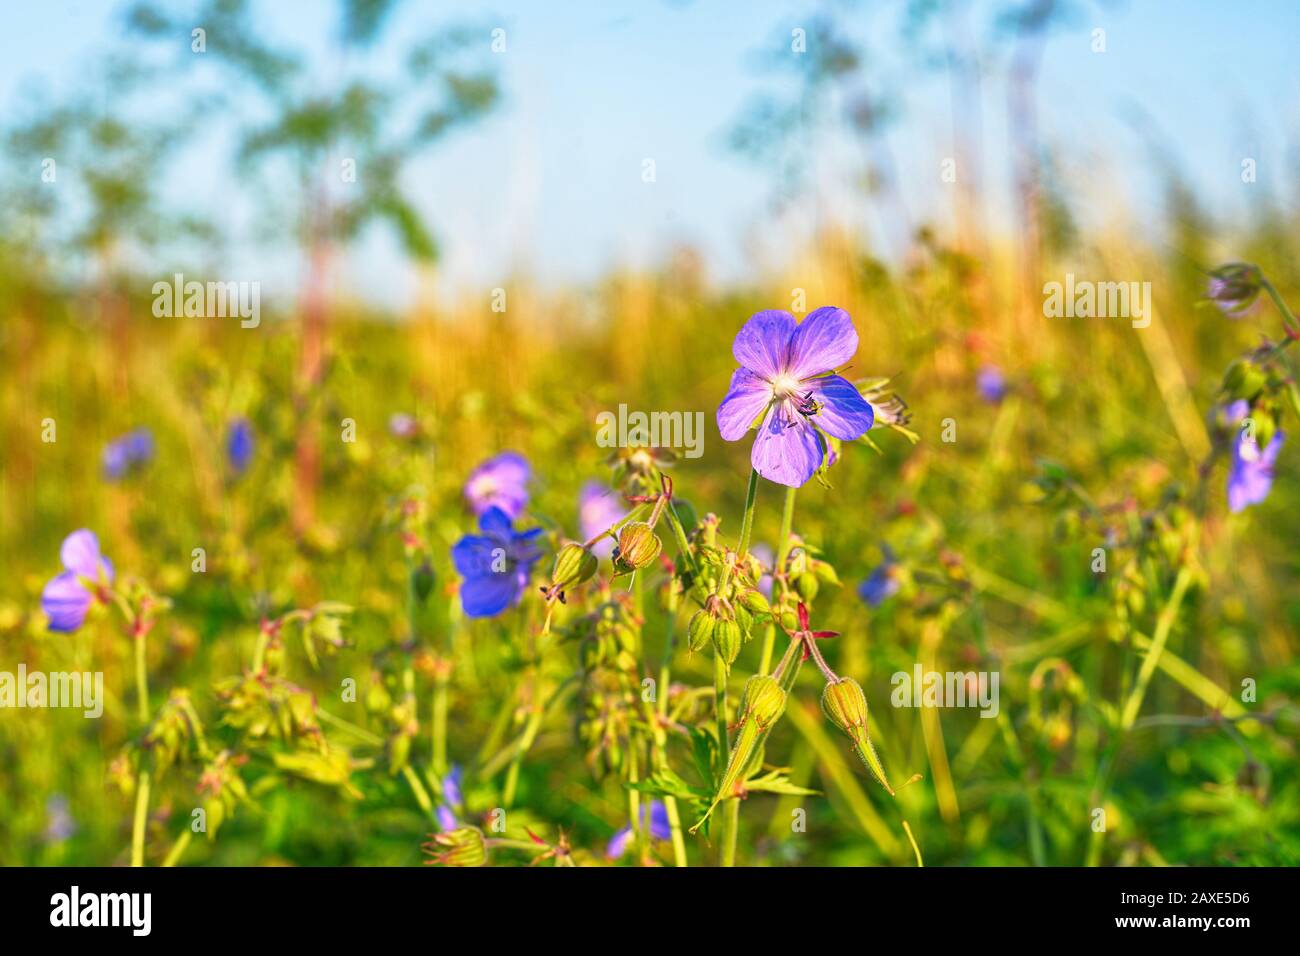 Sommerwiese mit blauen Blumen Stock Photo